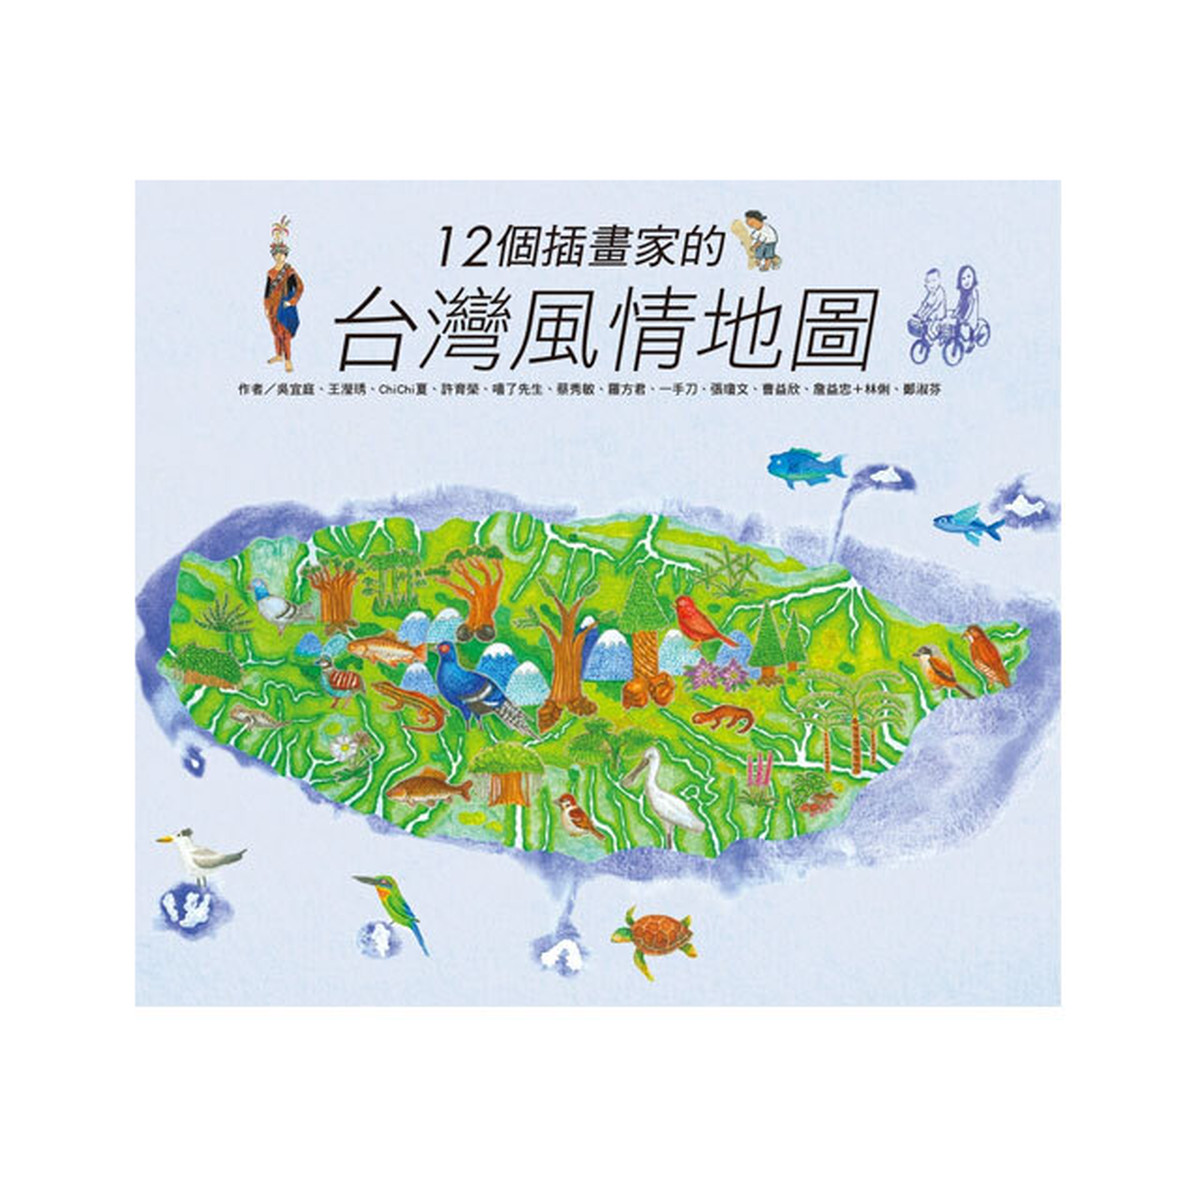 台湾本 絵本 台湾風情地図